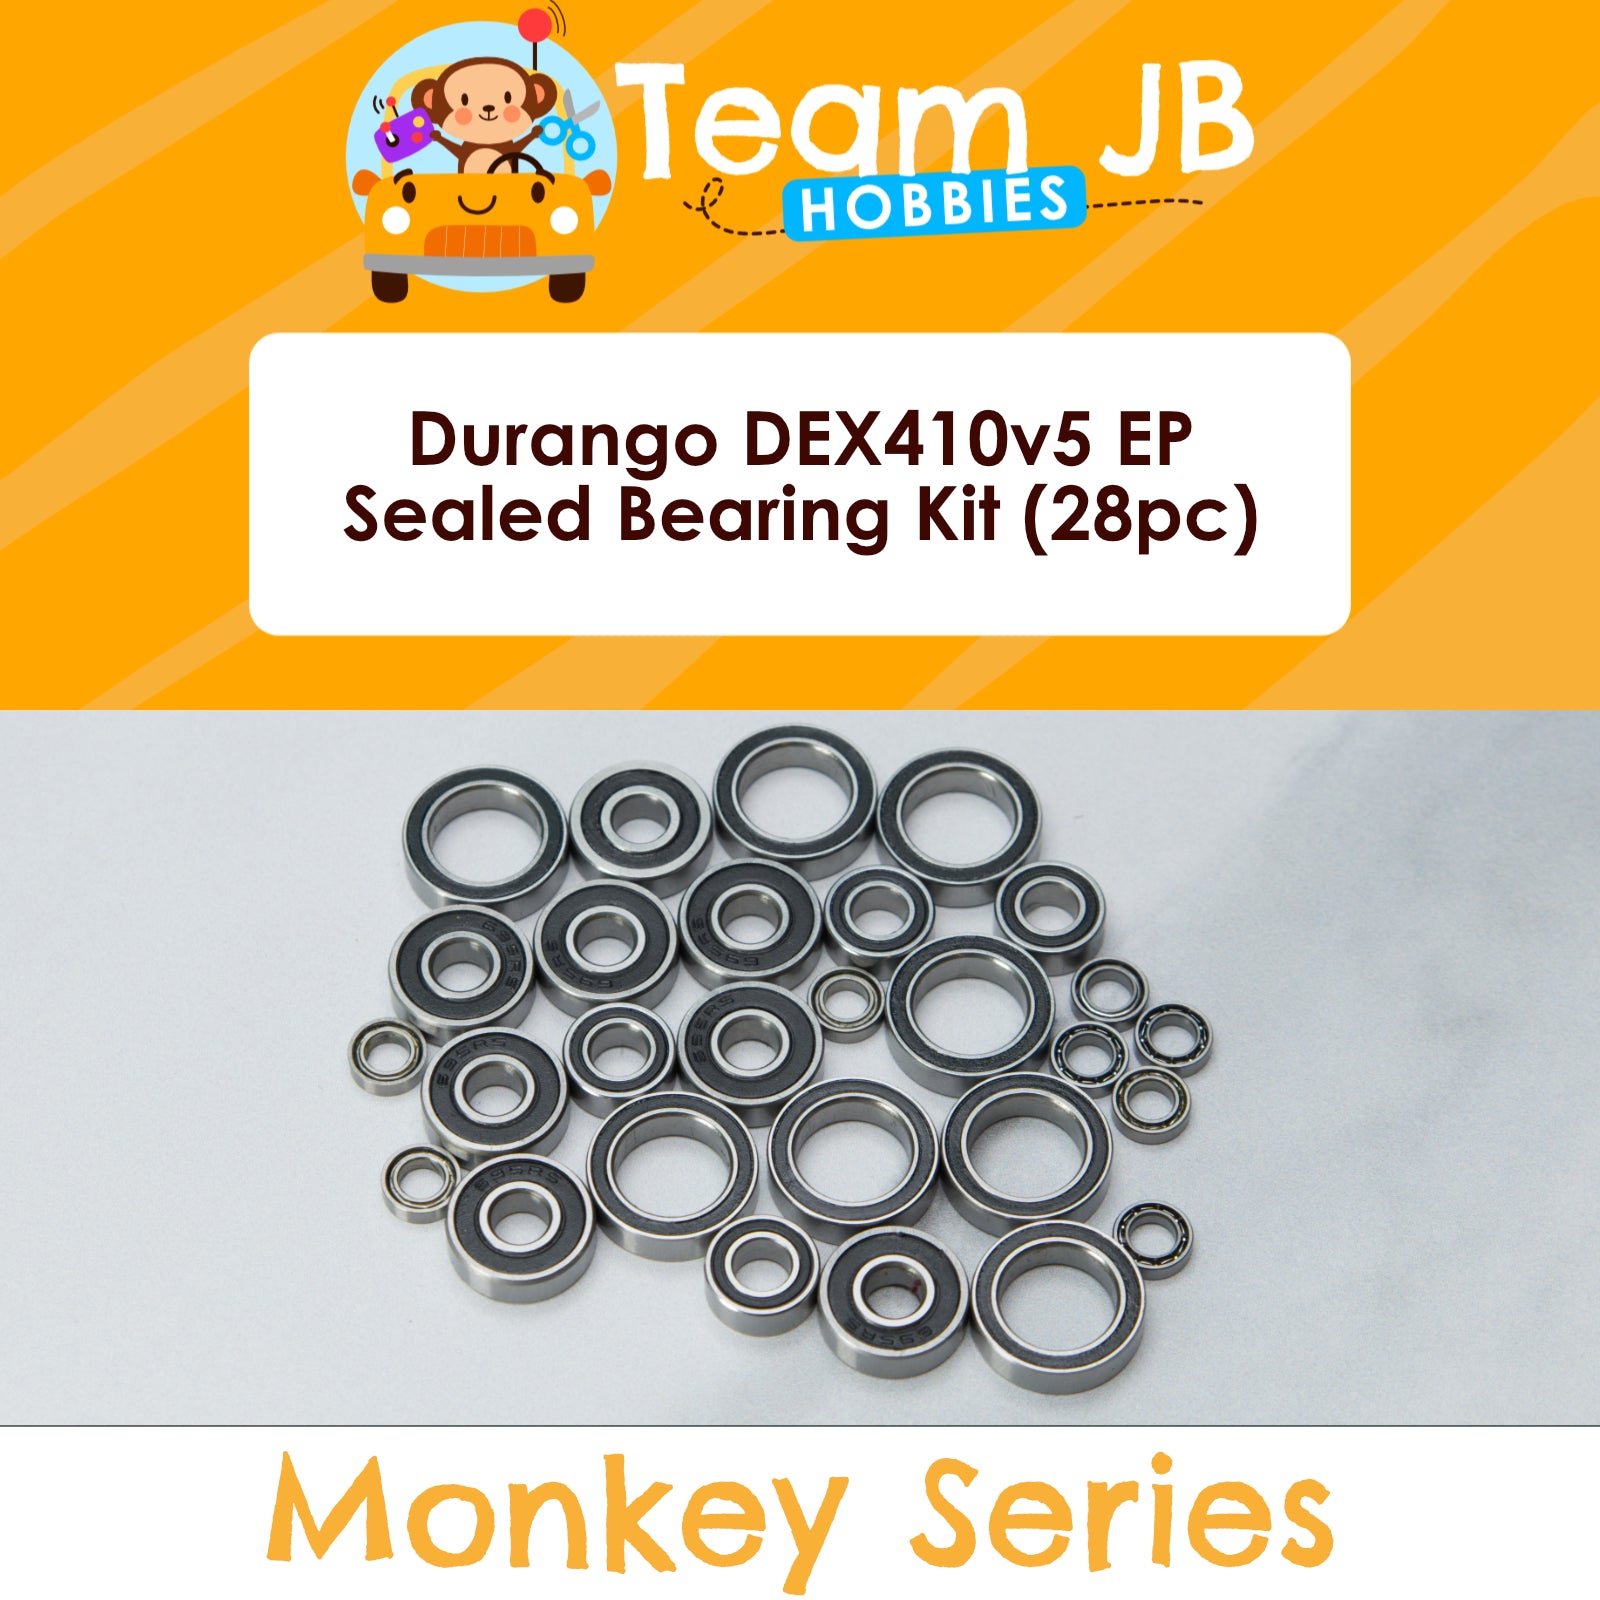 Durango DEX410v5 EP - Sealed Bearing Kit